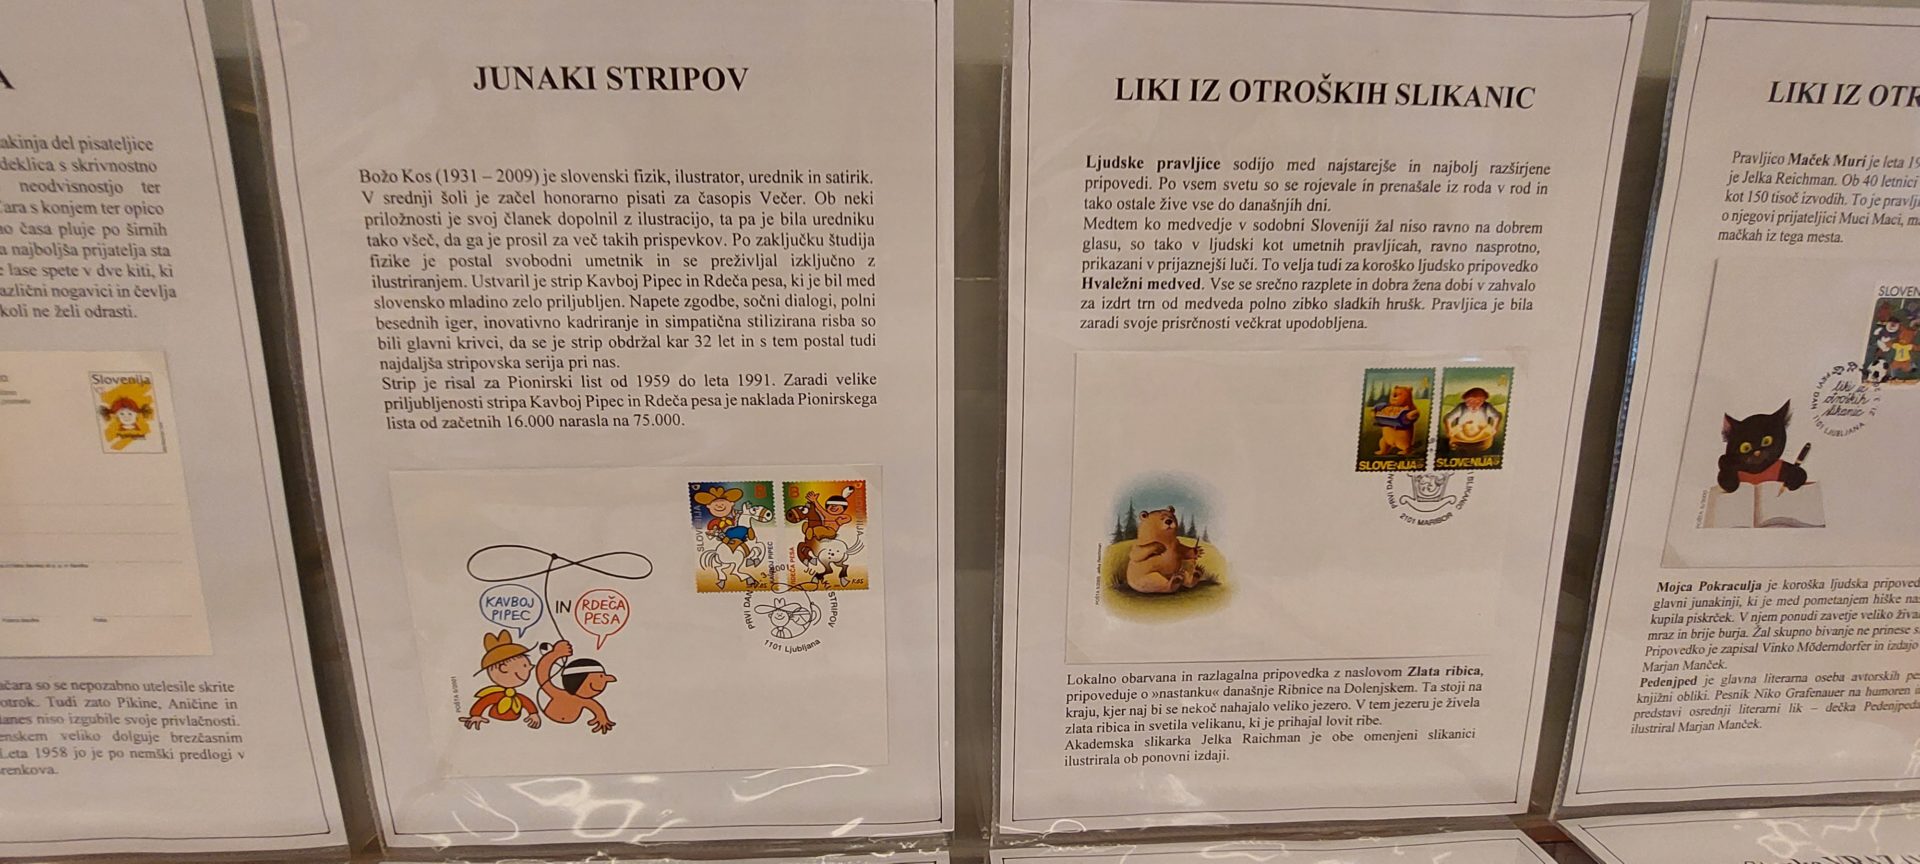 20220524 182658 - Literatura na znamkah - razstava znamk iz zbirke Marinke Cempre Turk